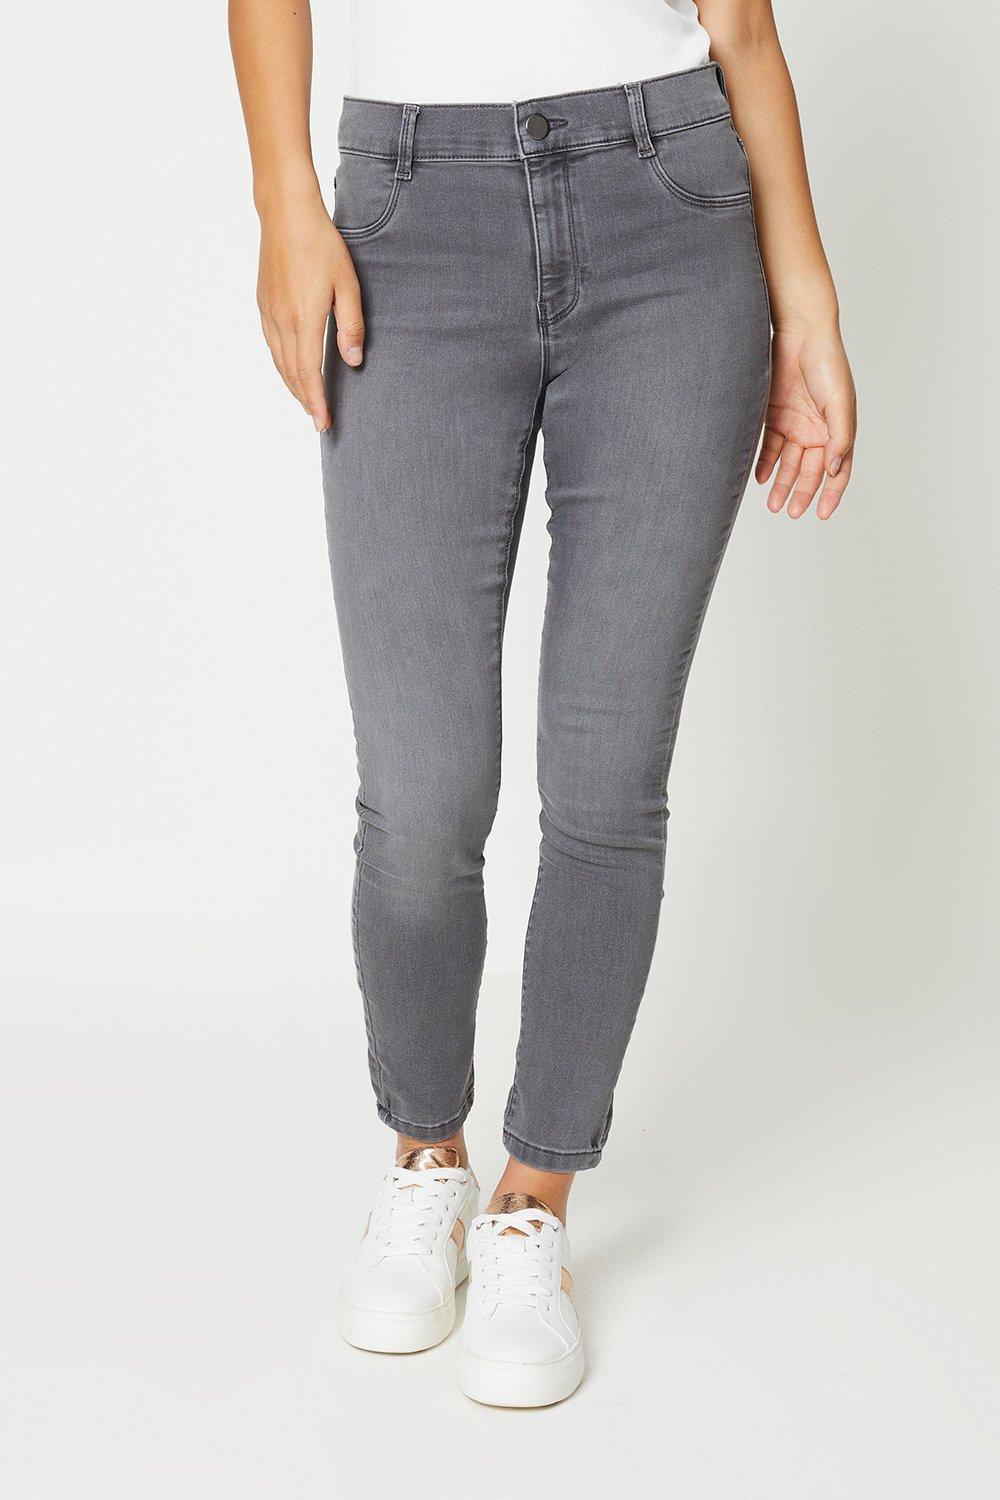 Women’s Petite Frankie Skinny Jeans - grey - 16